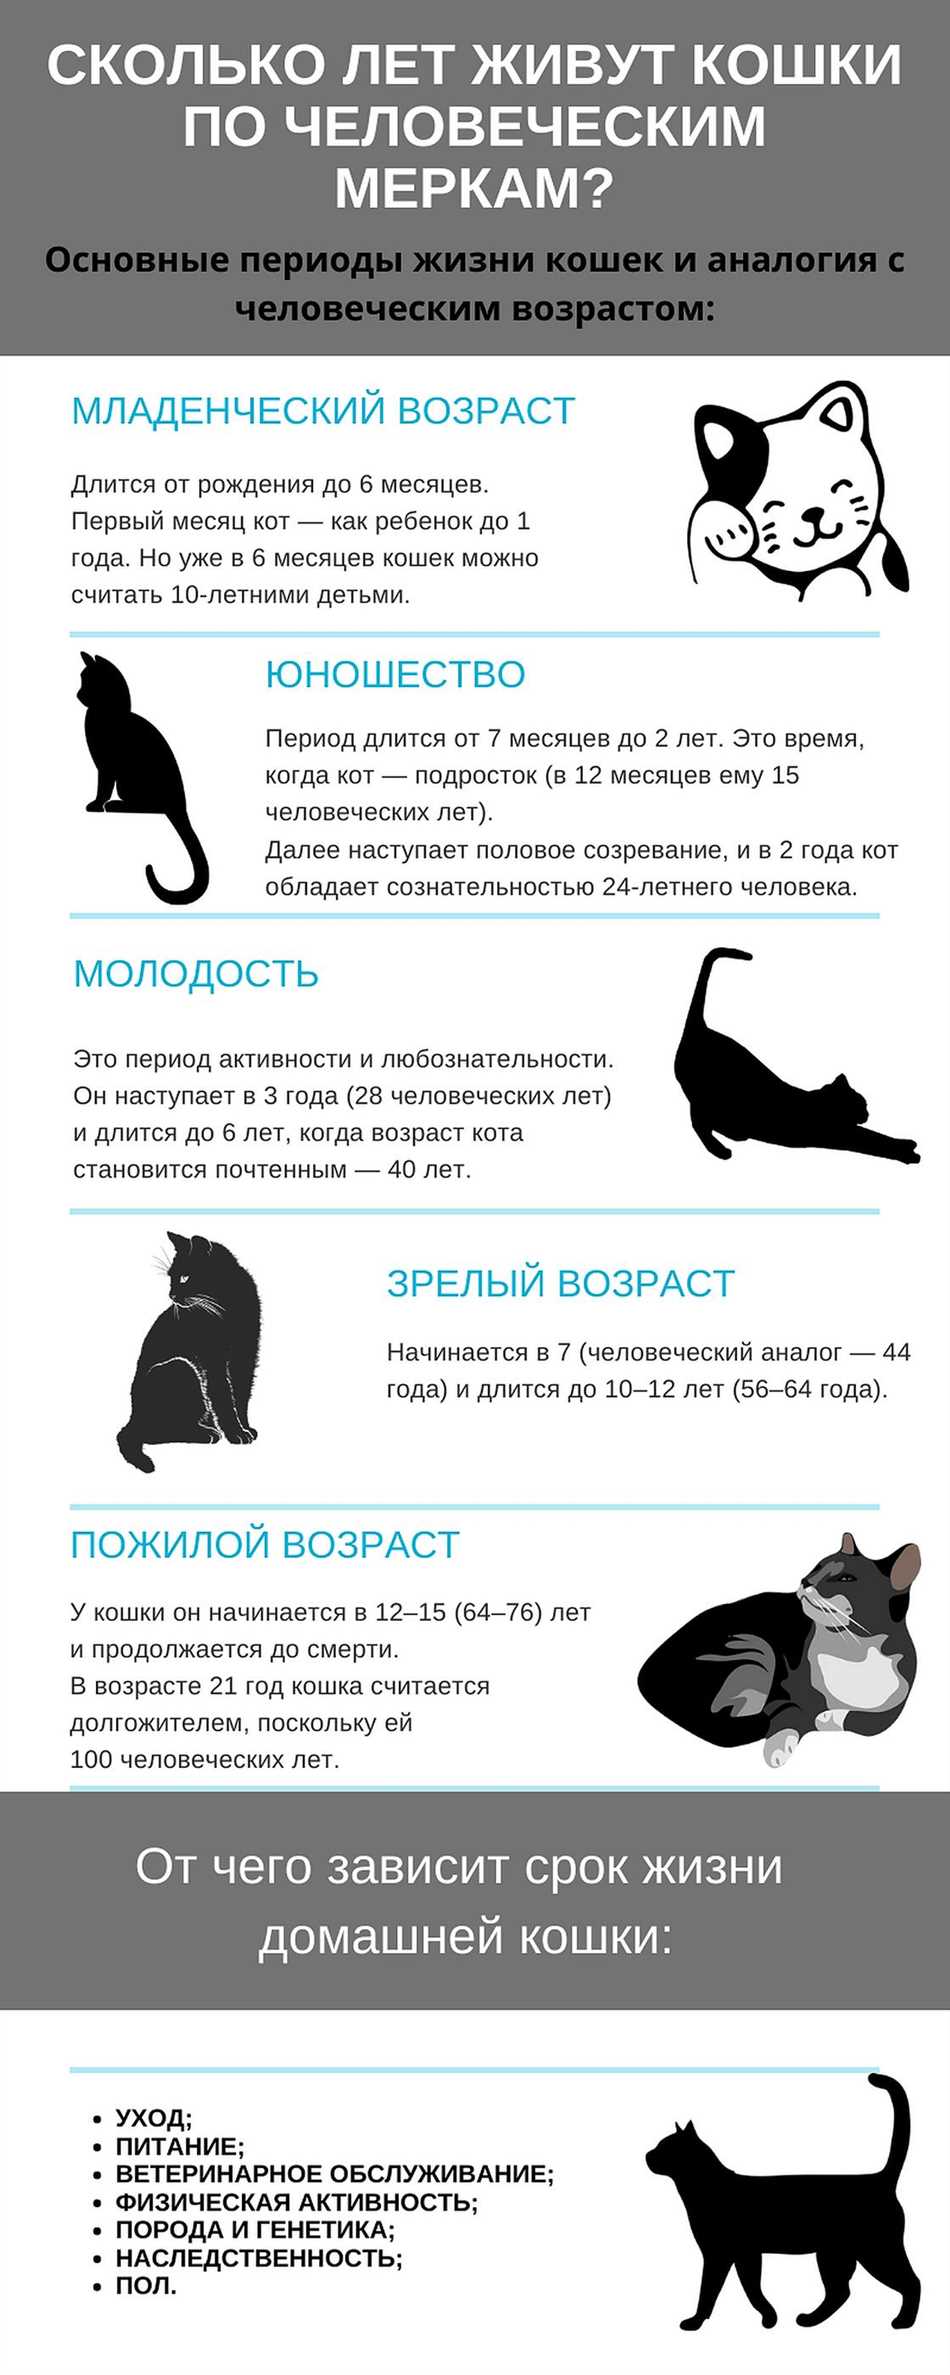 Сколько живут коты долгожители?